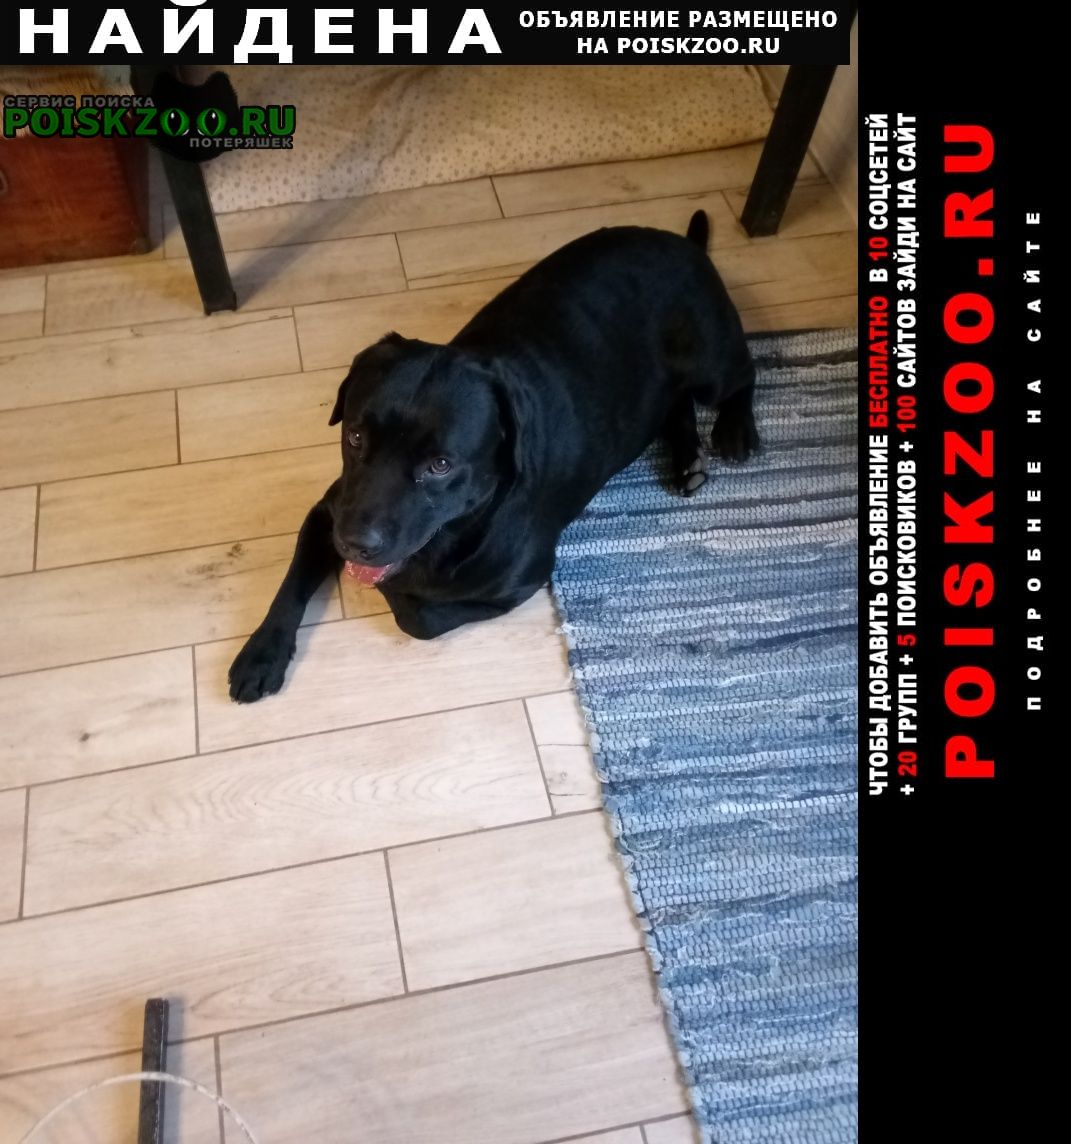 Найдена собака кобель лабрадор, мальчик Севастополь